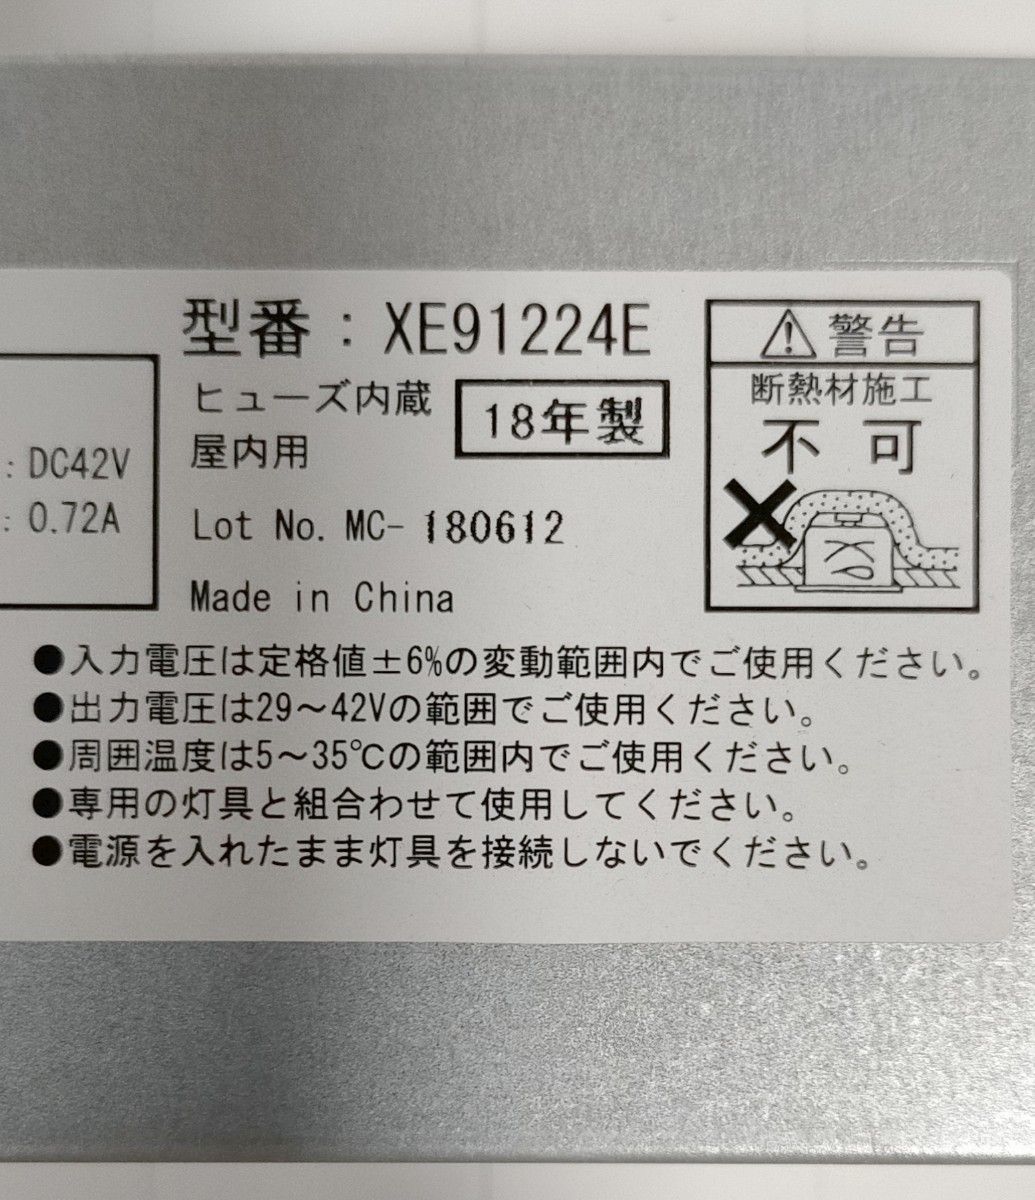 【送料無料】KOIZUMI★LED電源ユニット★XE91224E